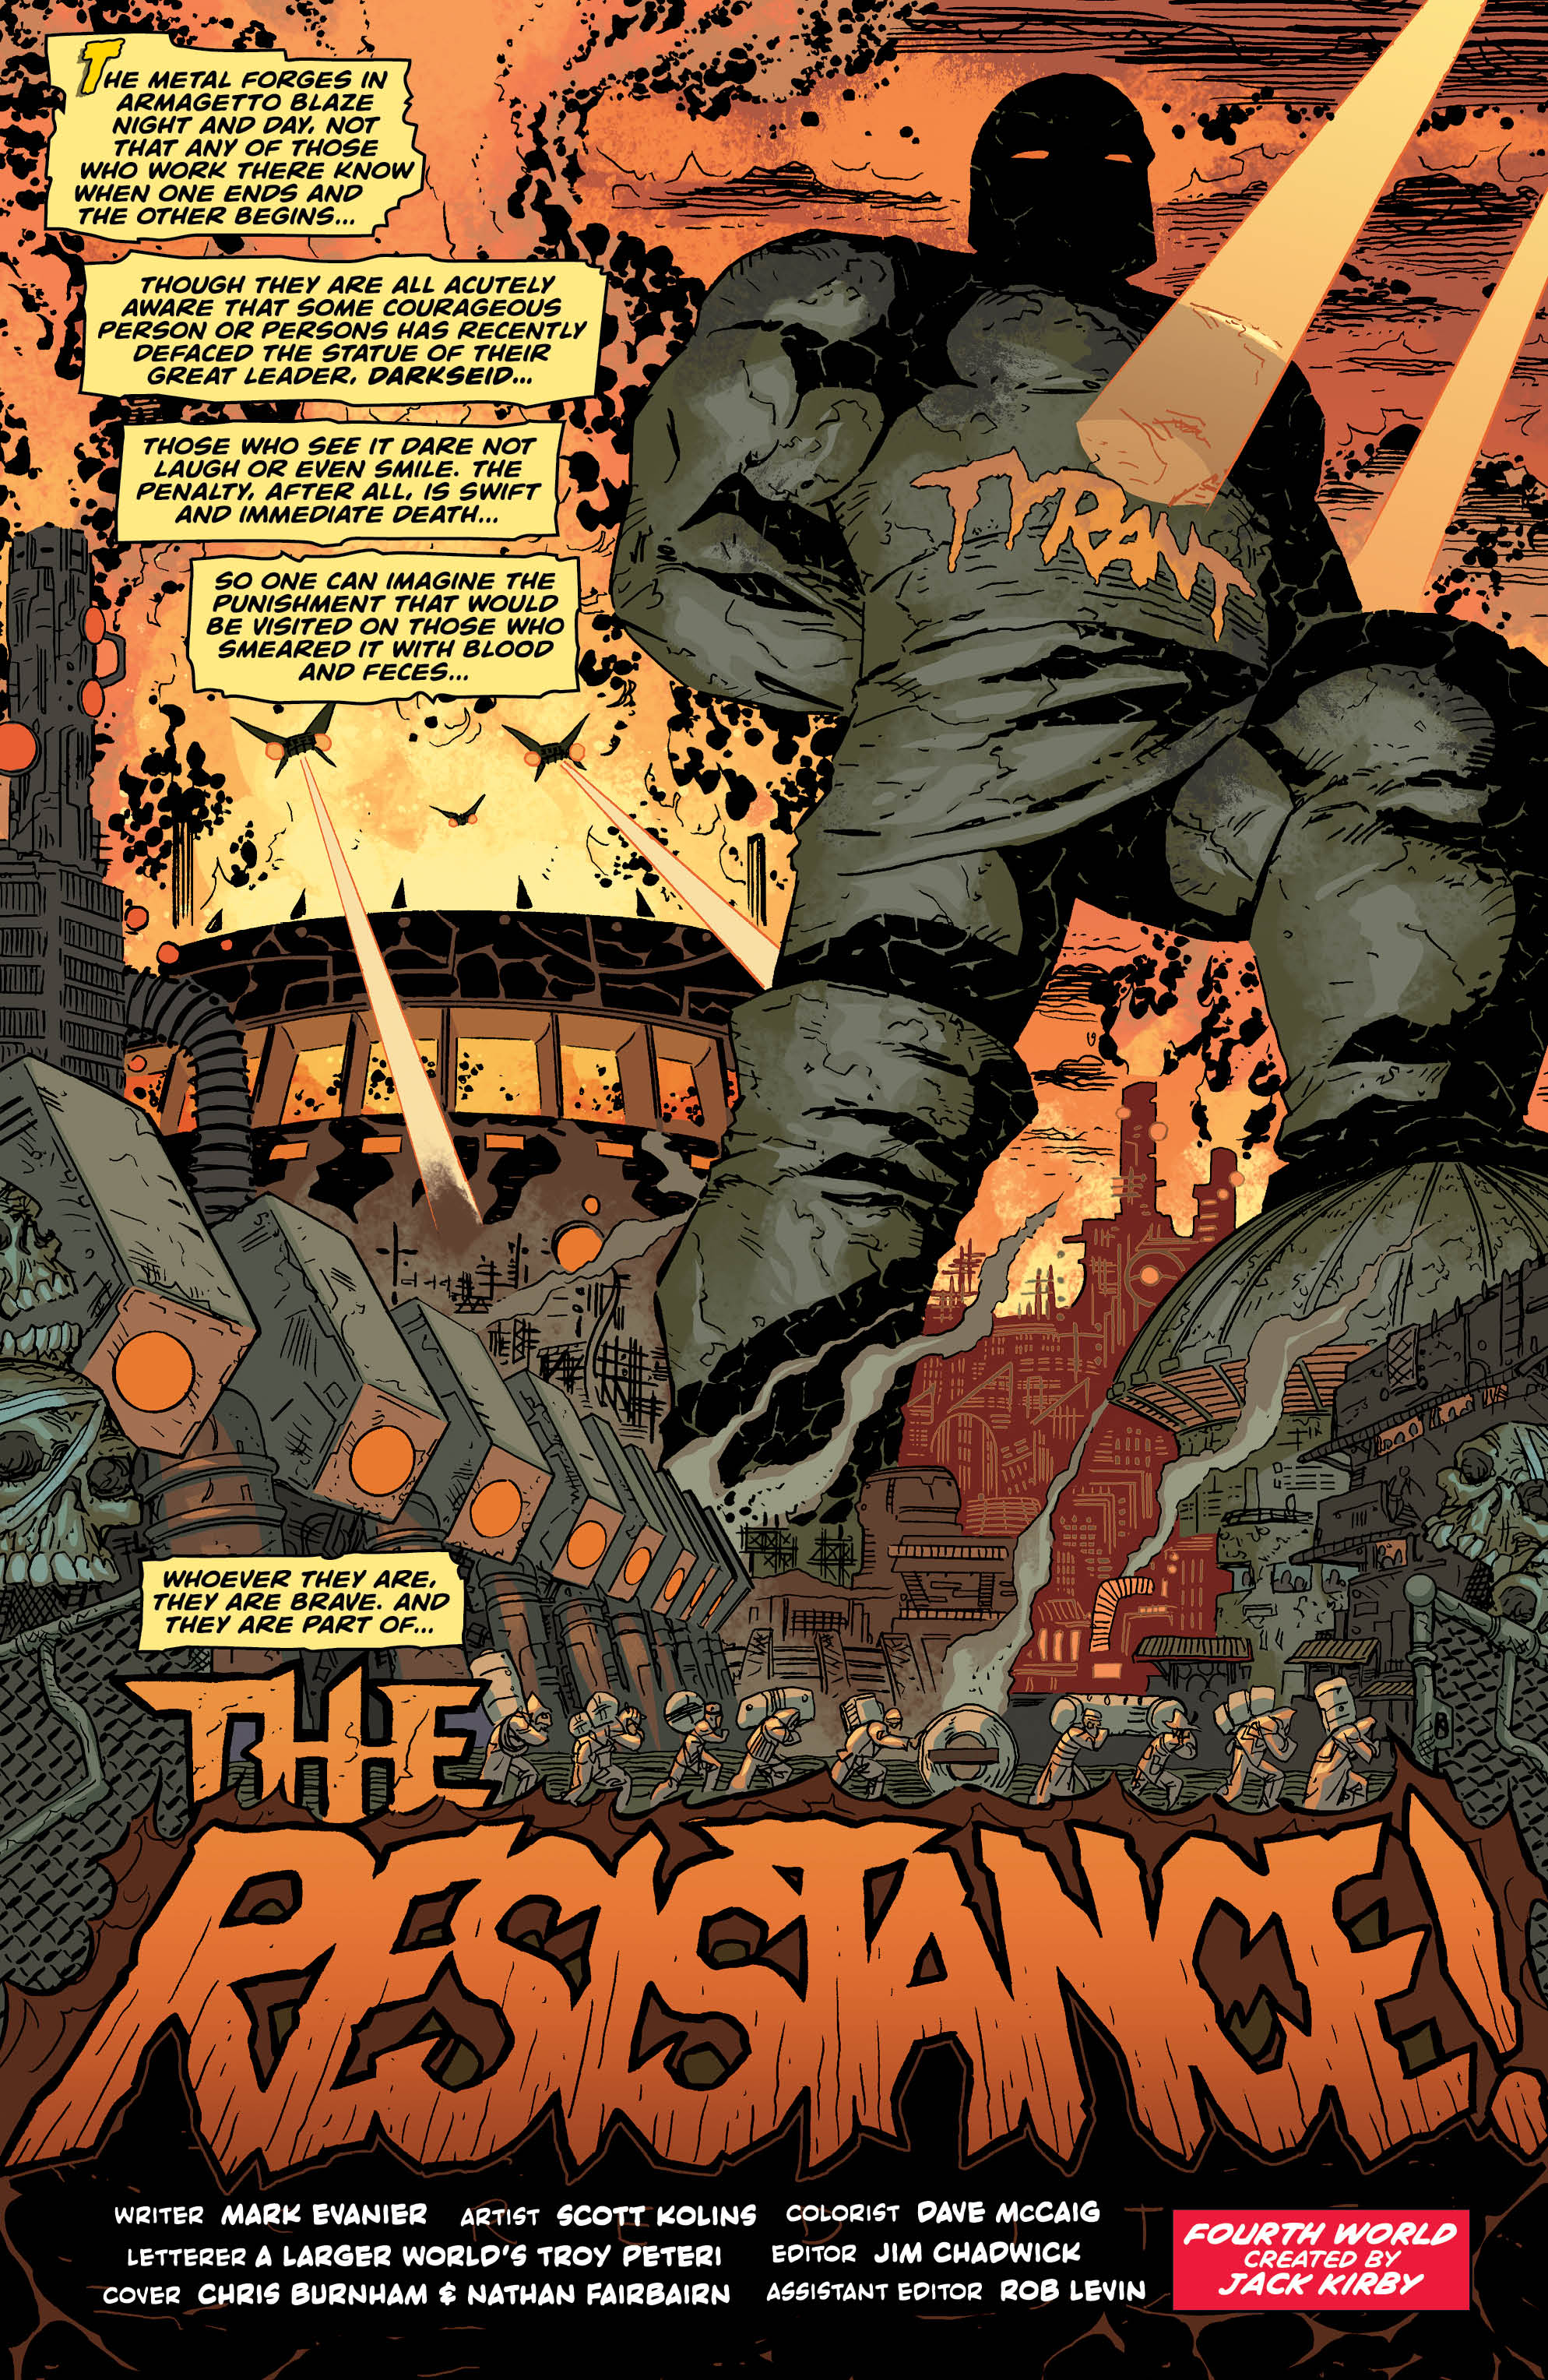 Jack Kirby Darkseid 1 - DC Comics News